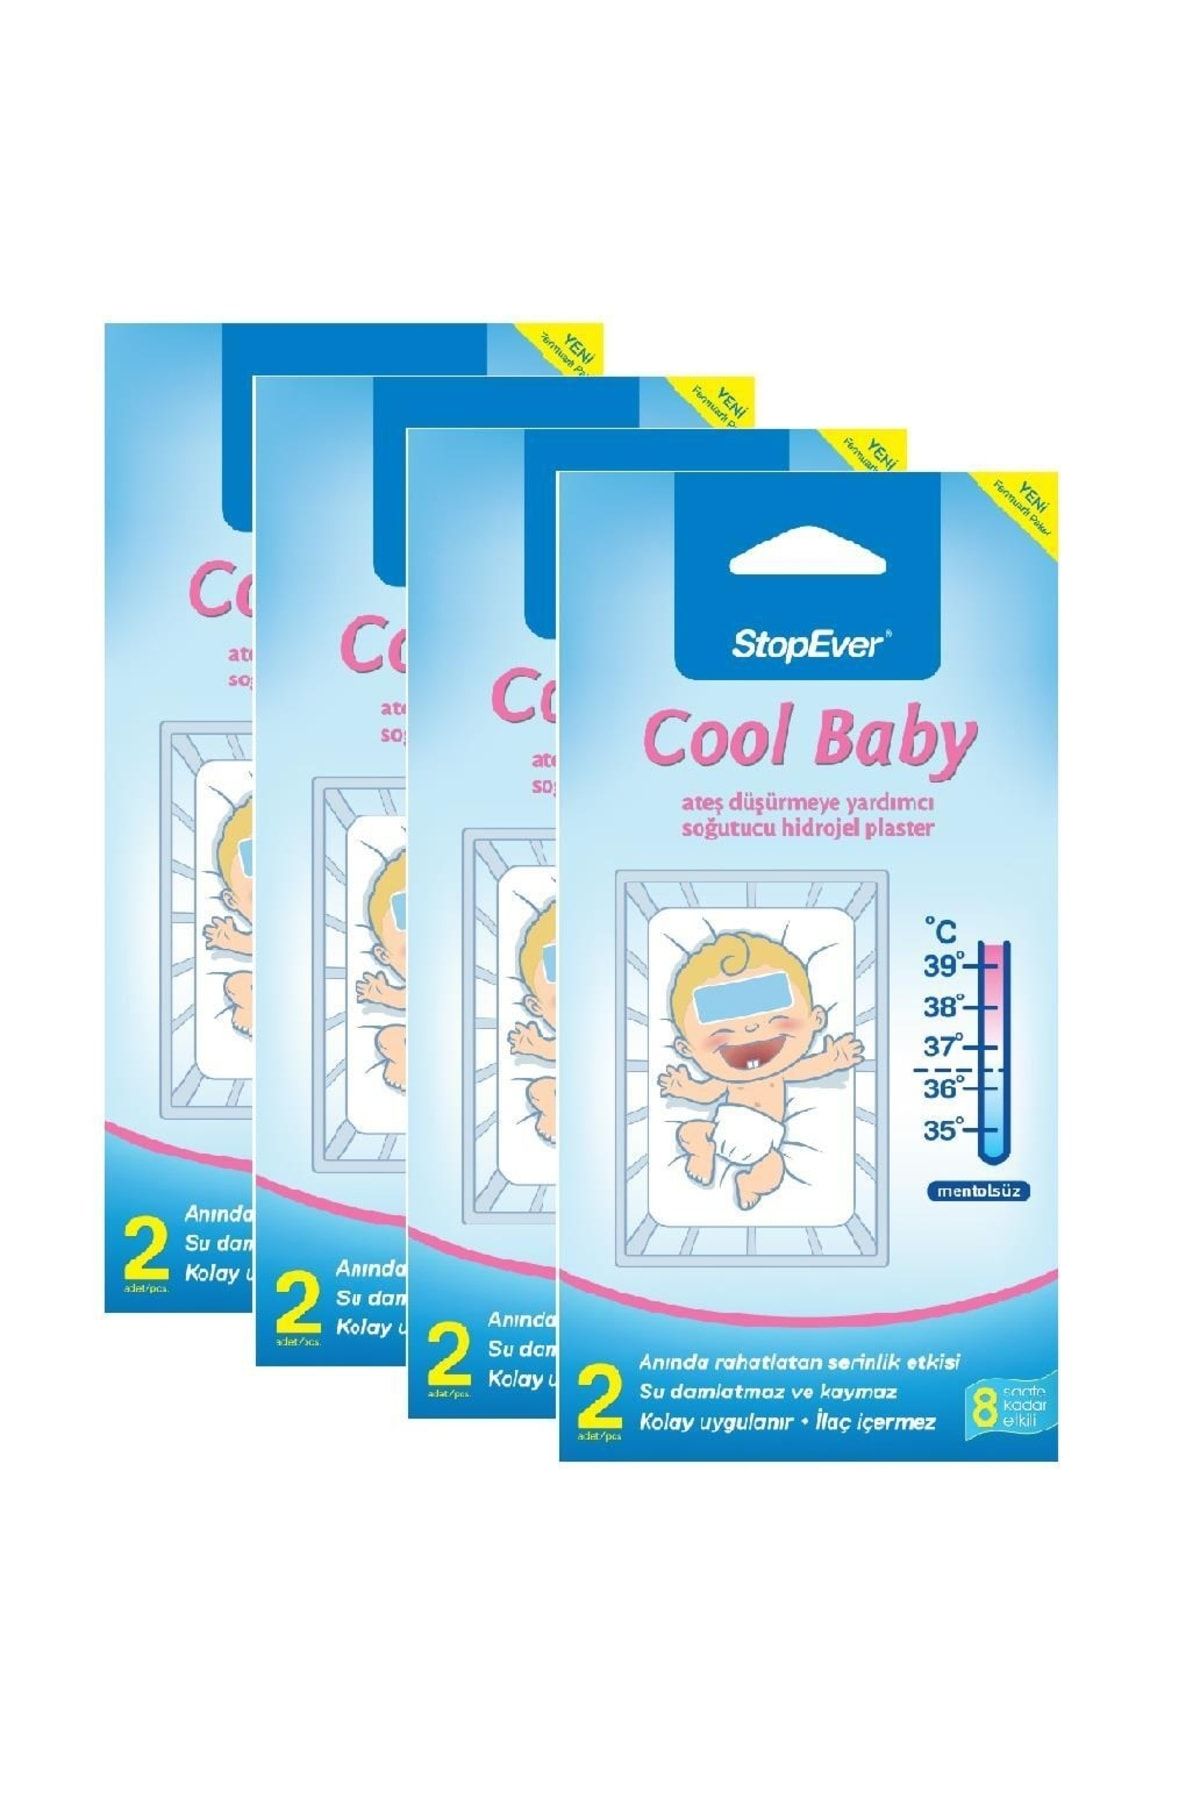 StopEver Cool Baby Ateş Düşürmeye Yardımcı Soğutucu Hidrojel Plaster -4x2 Adet (4'lü)